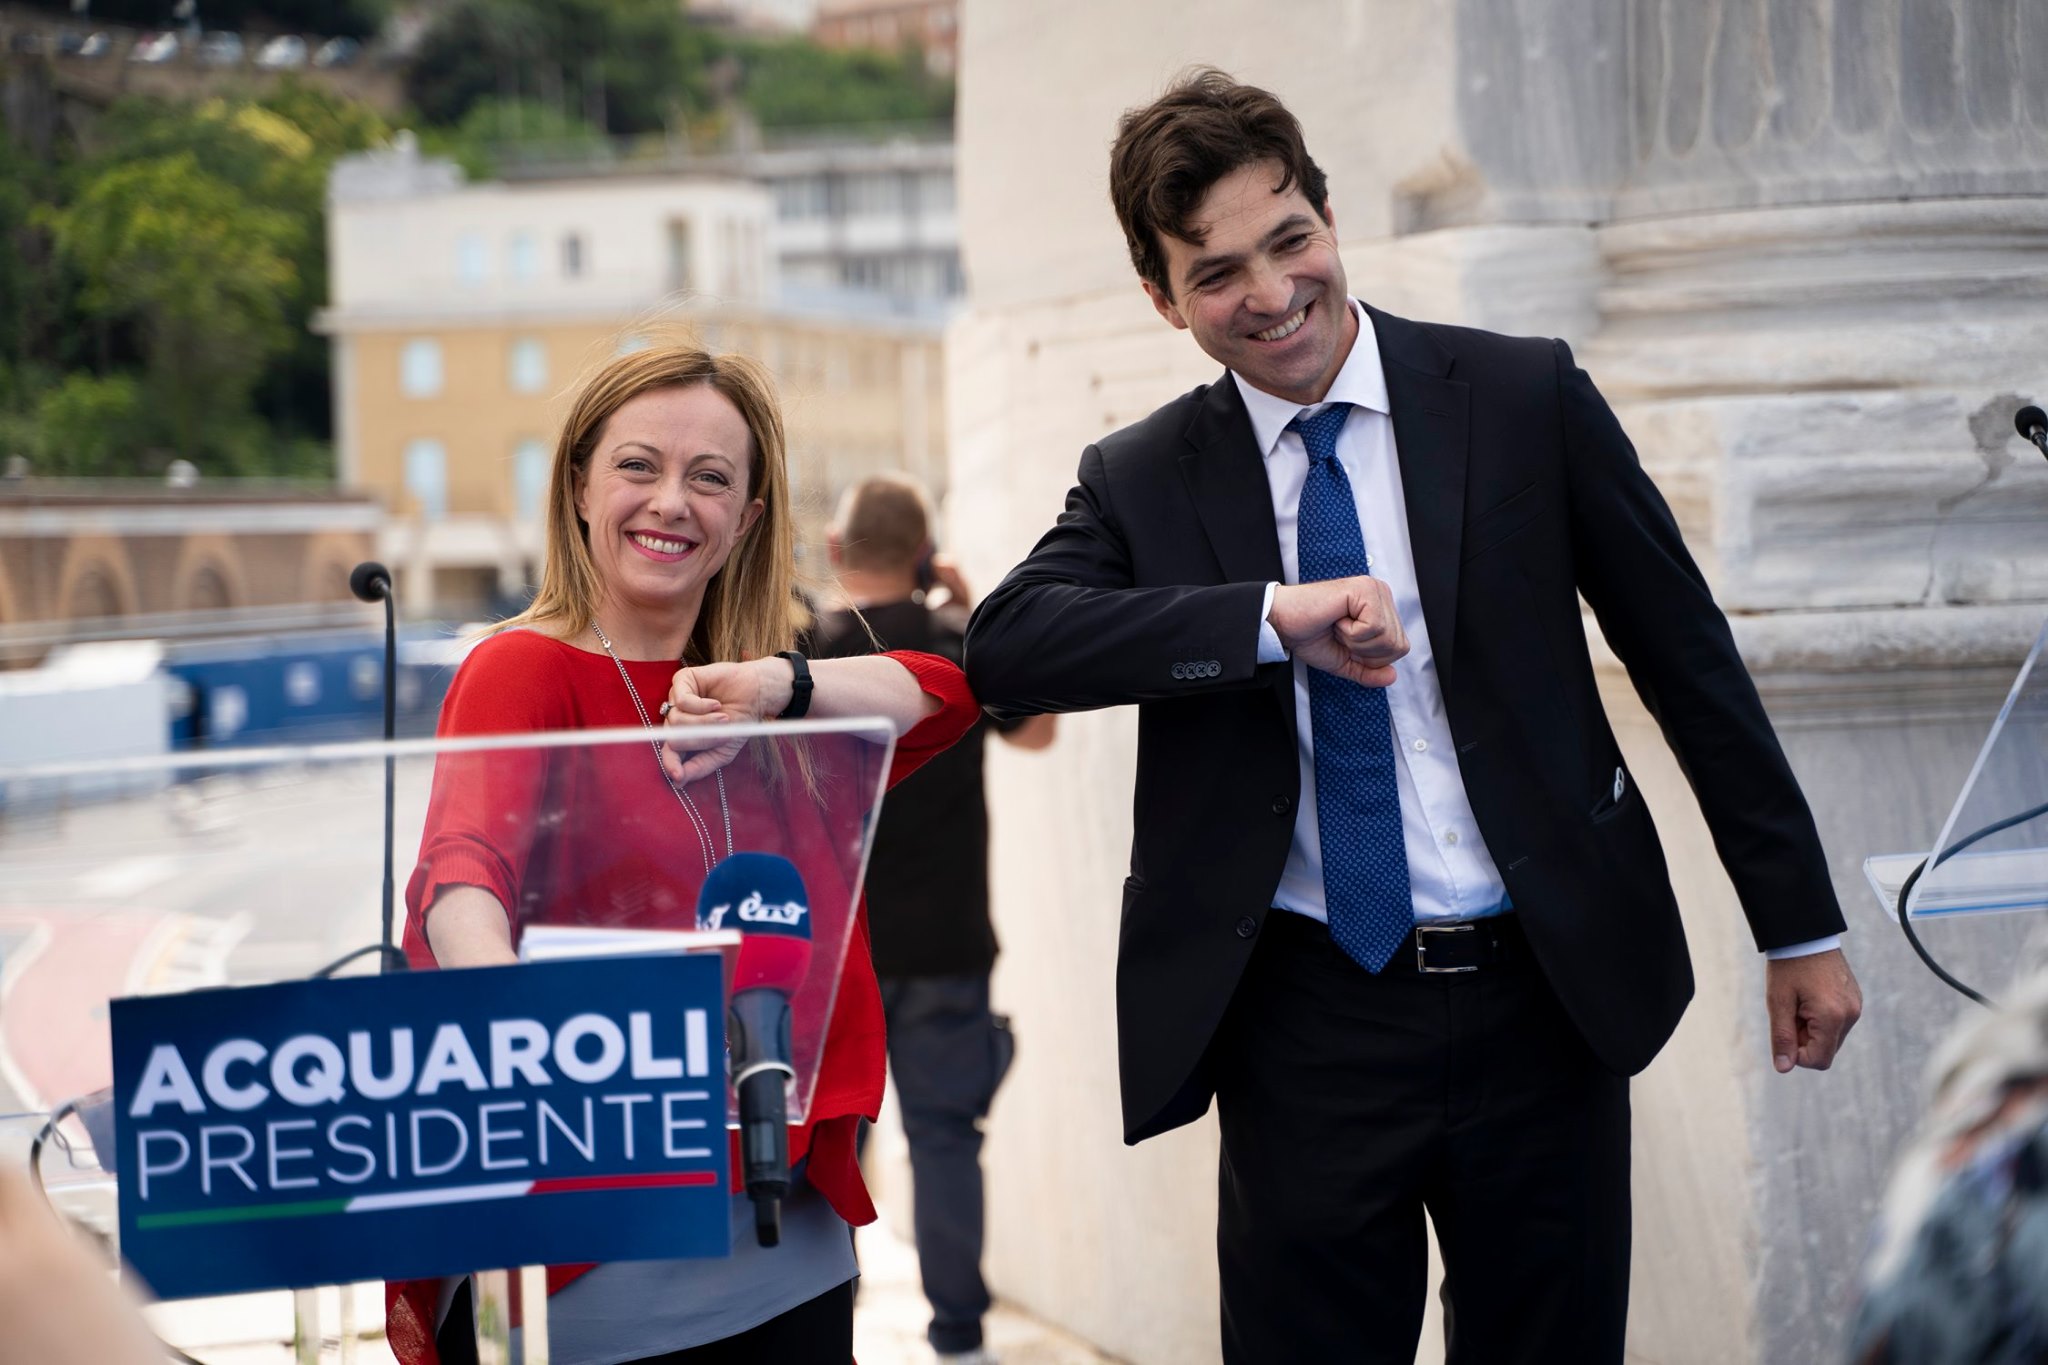 Marche: Meloni con Acquaroli, Fratelli d'Italia lancia il candidato governatore per il centrodestra